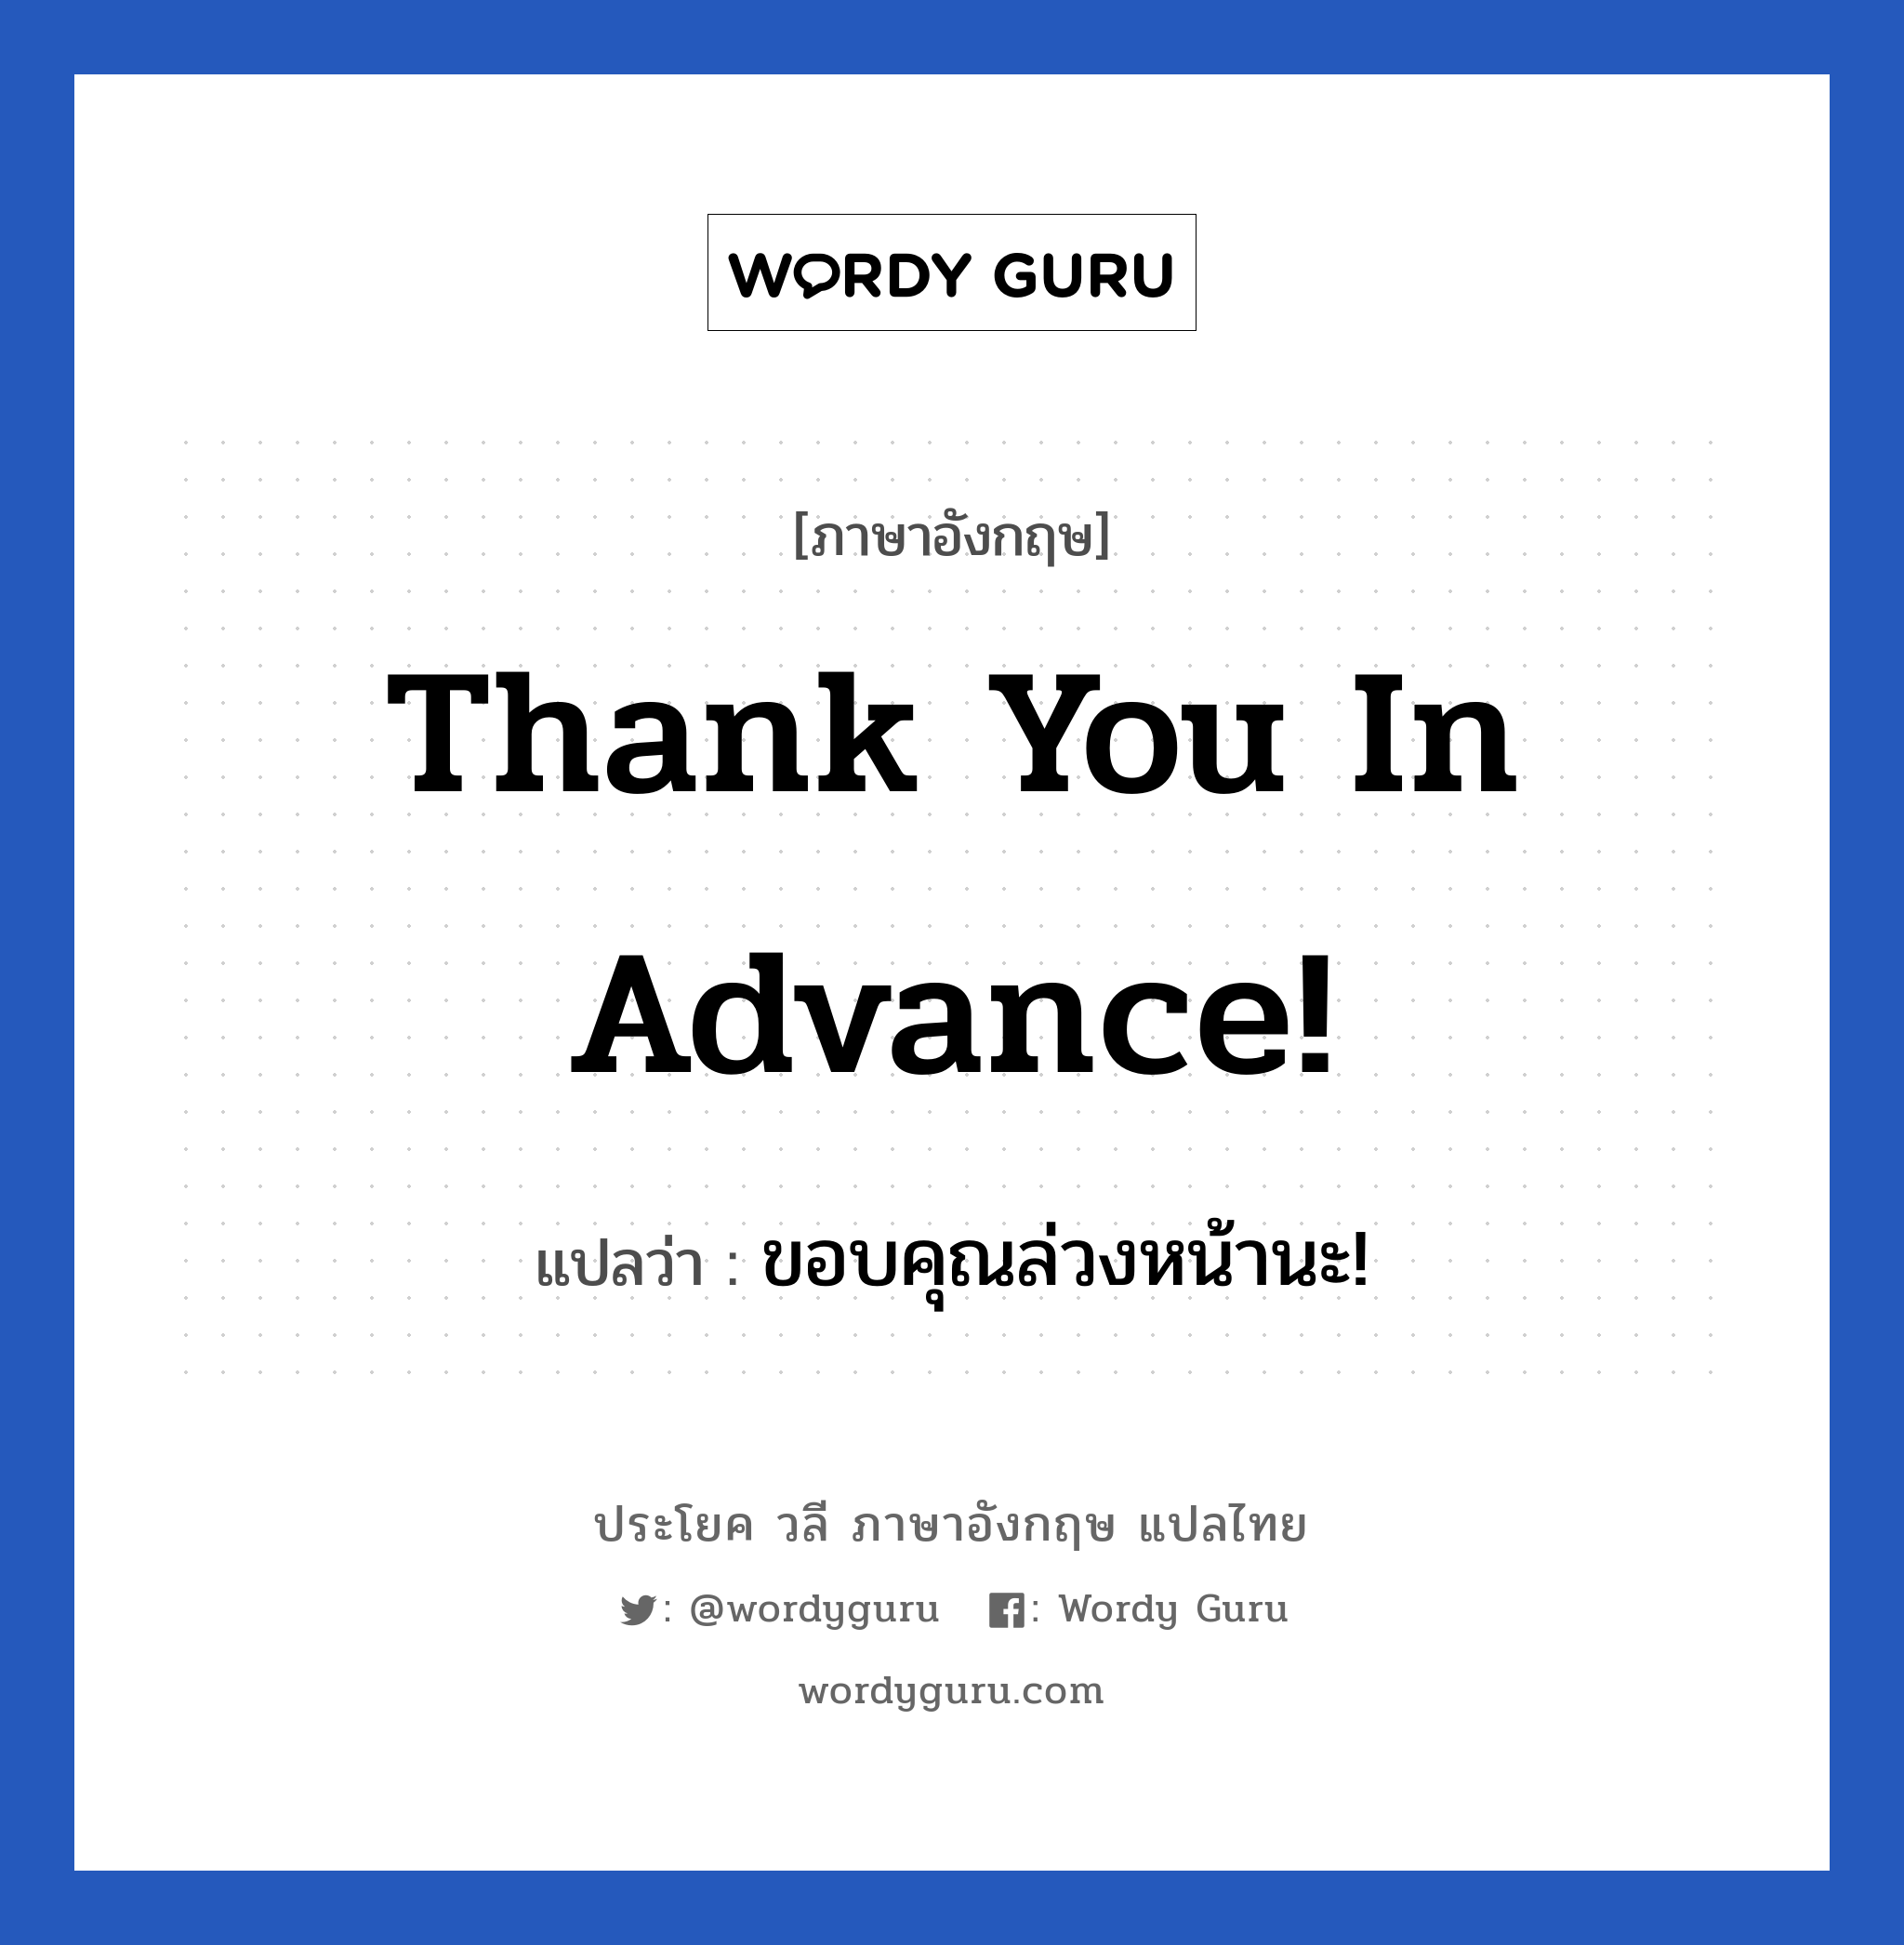 Thank you in advance! แปลว่า?, วลีภาษาอังกฤษ Thank you in advance! แปลว่า ขอบคุณล่วงหน้านะ!